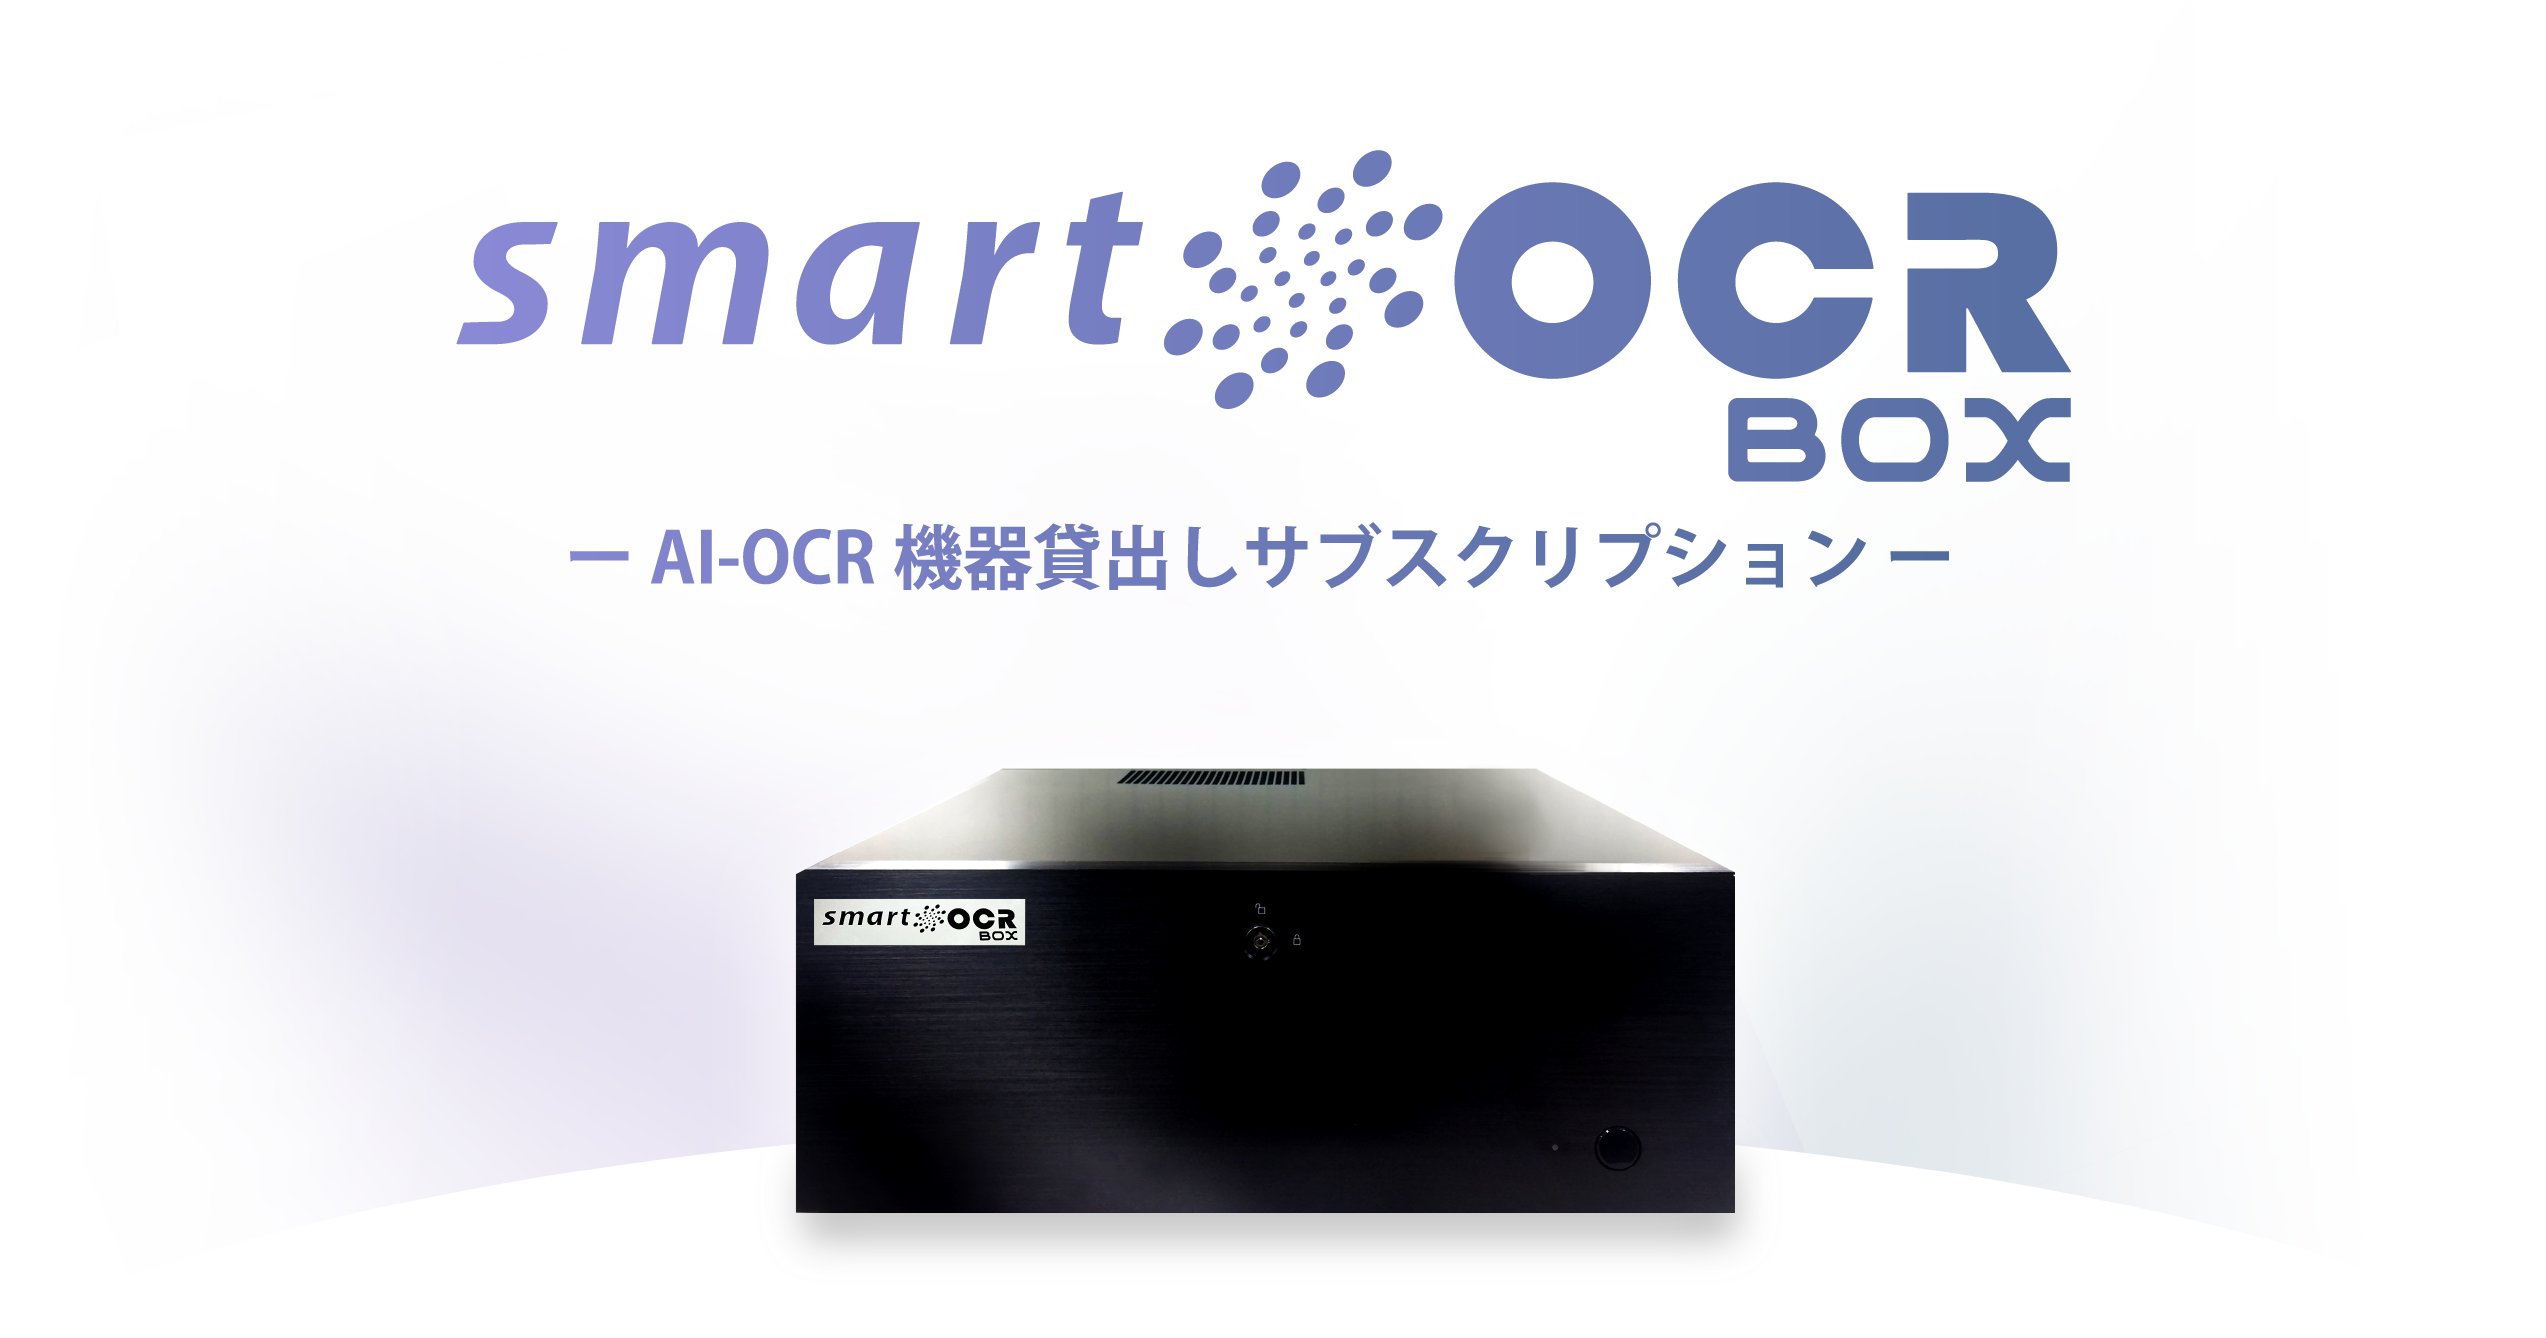 スマートOCR BOX｜AI-OCR対応のスマートOCR